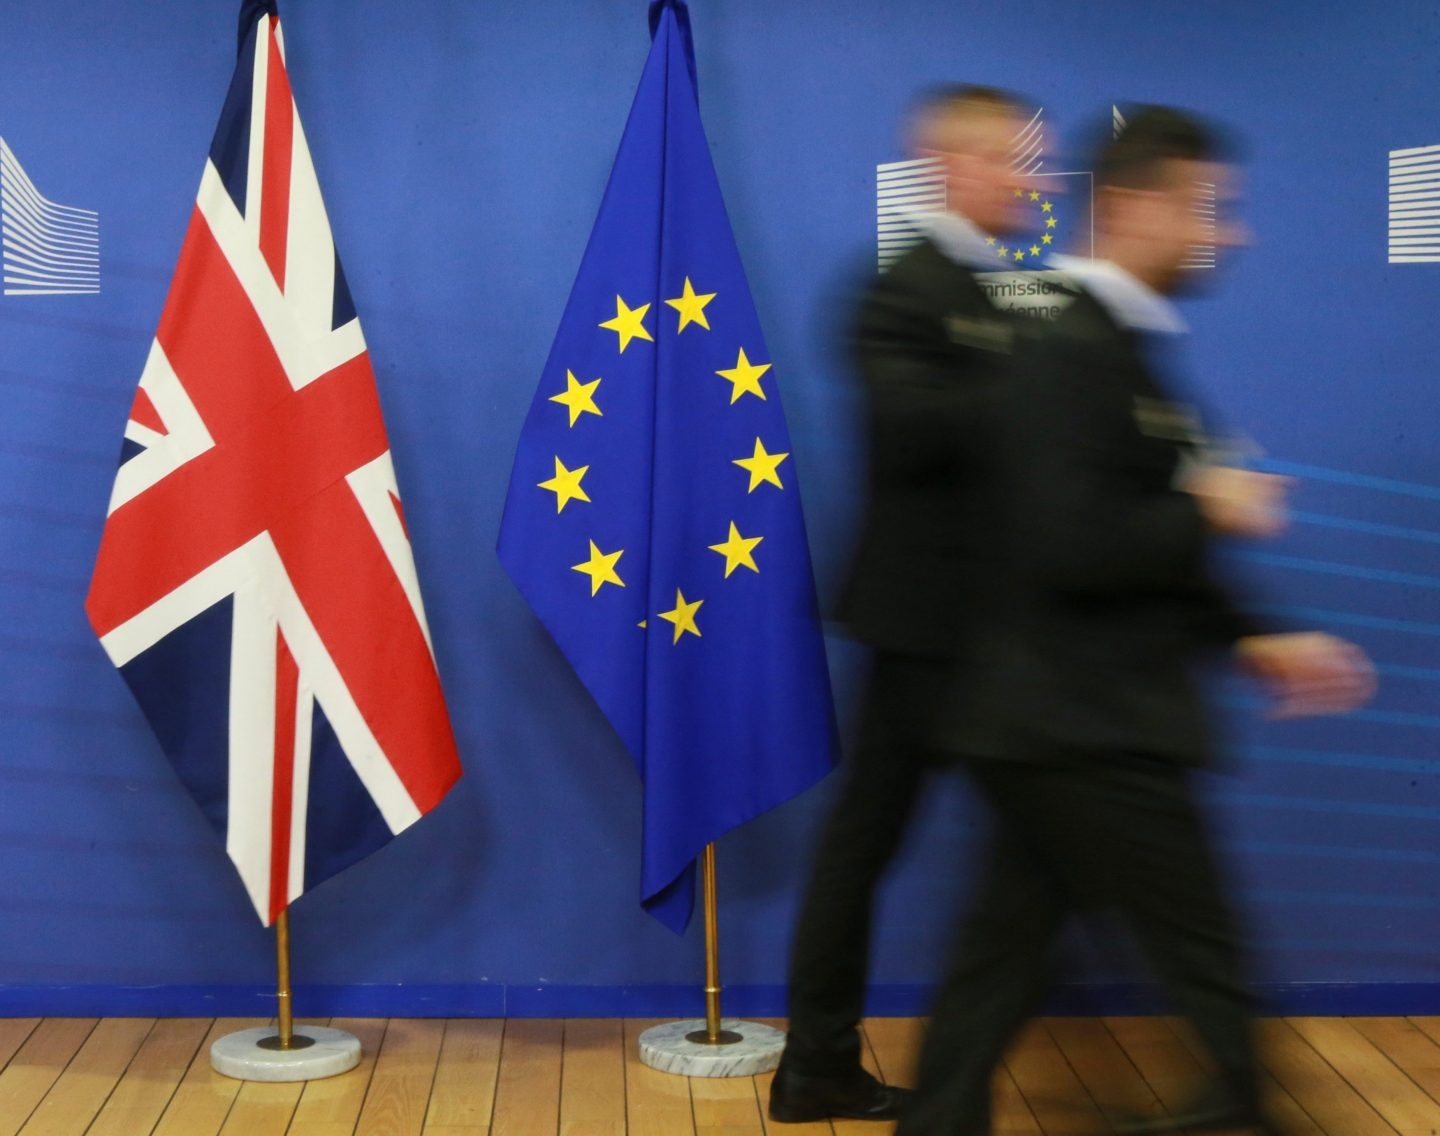 Dos empleados pasan junto a las banderas del Reino Unido y la Unión Europea.